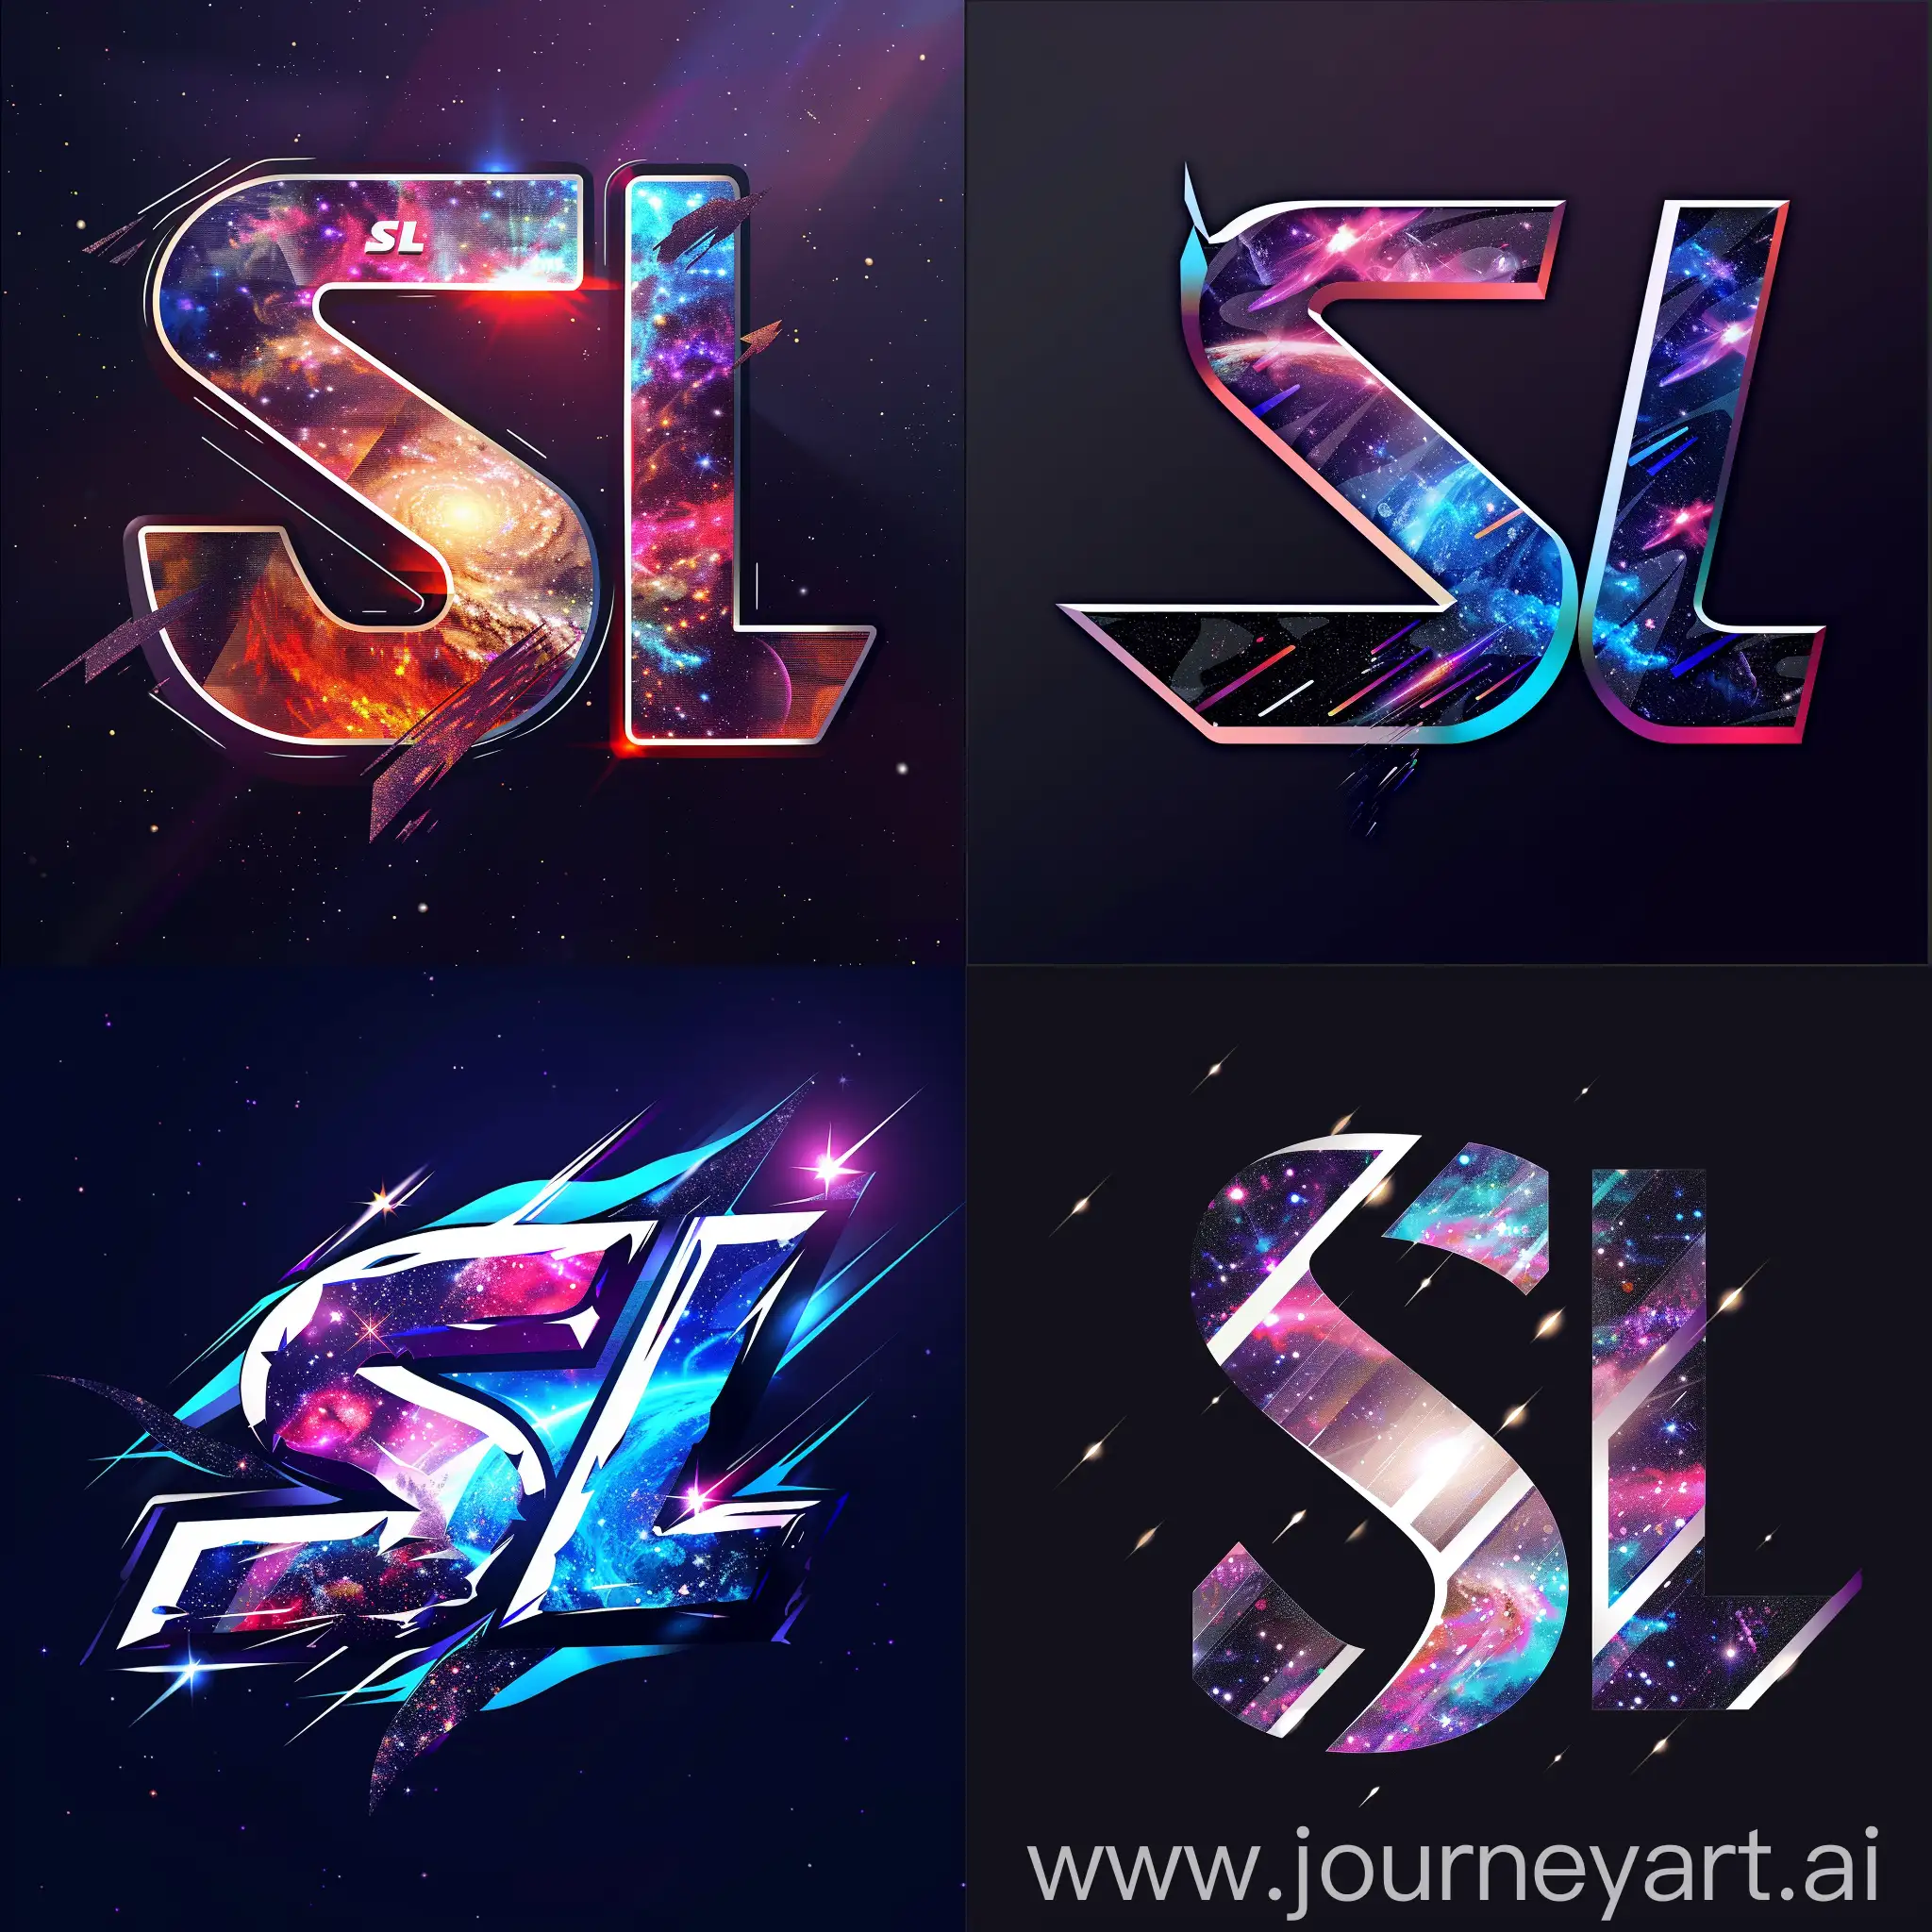 Логотип "SL" с элементами галактики и космического пространства, подчеркивающий эпический и масштабный характер киберспортивных событий